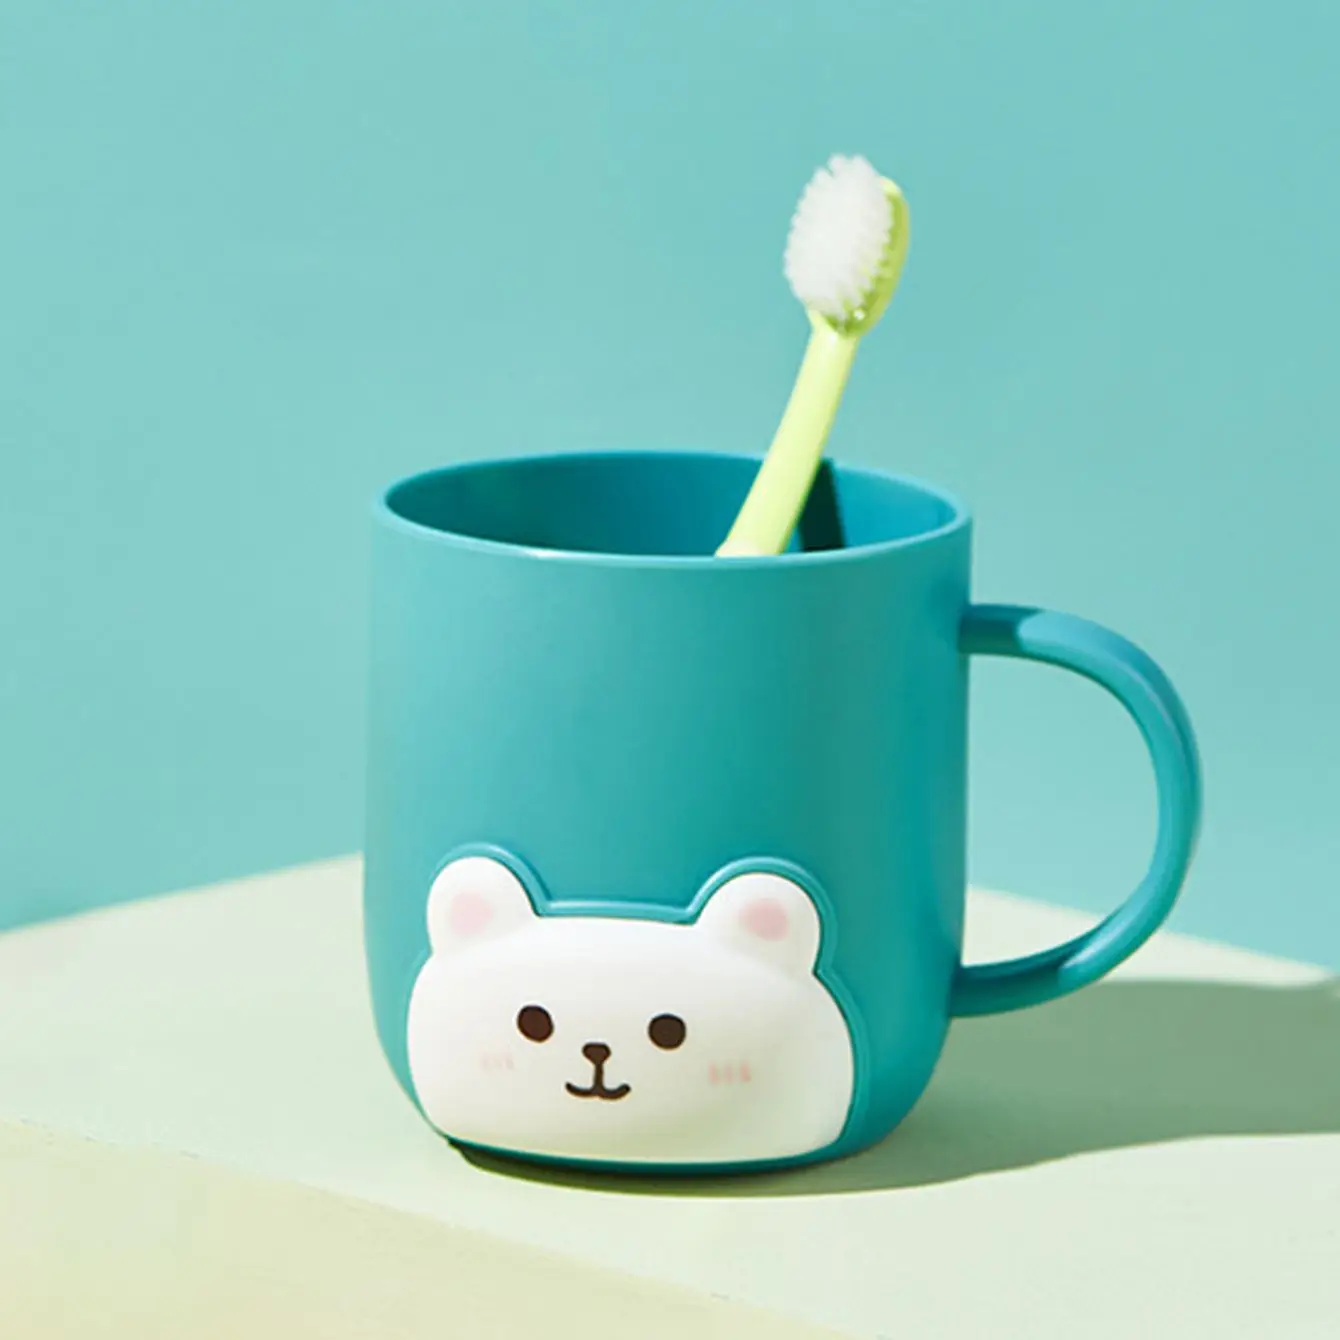 1 шт.-Чашка для воды Bear, утолщающая чашку для полоскания в ванной, с ручкой, чашка для чистки зубов и мытья посуды в студенческом общежитии-случайный цвет